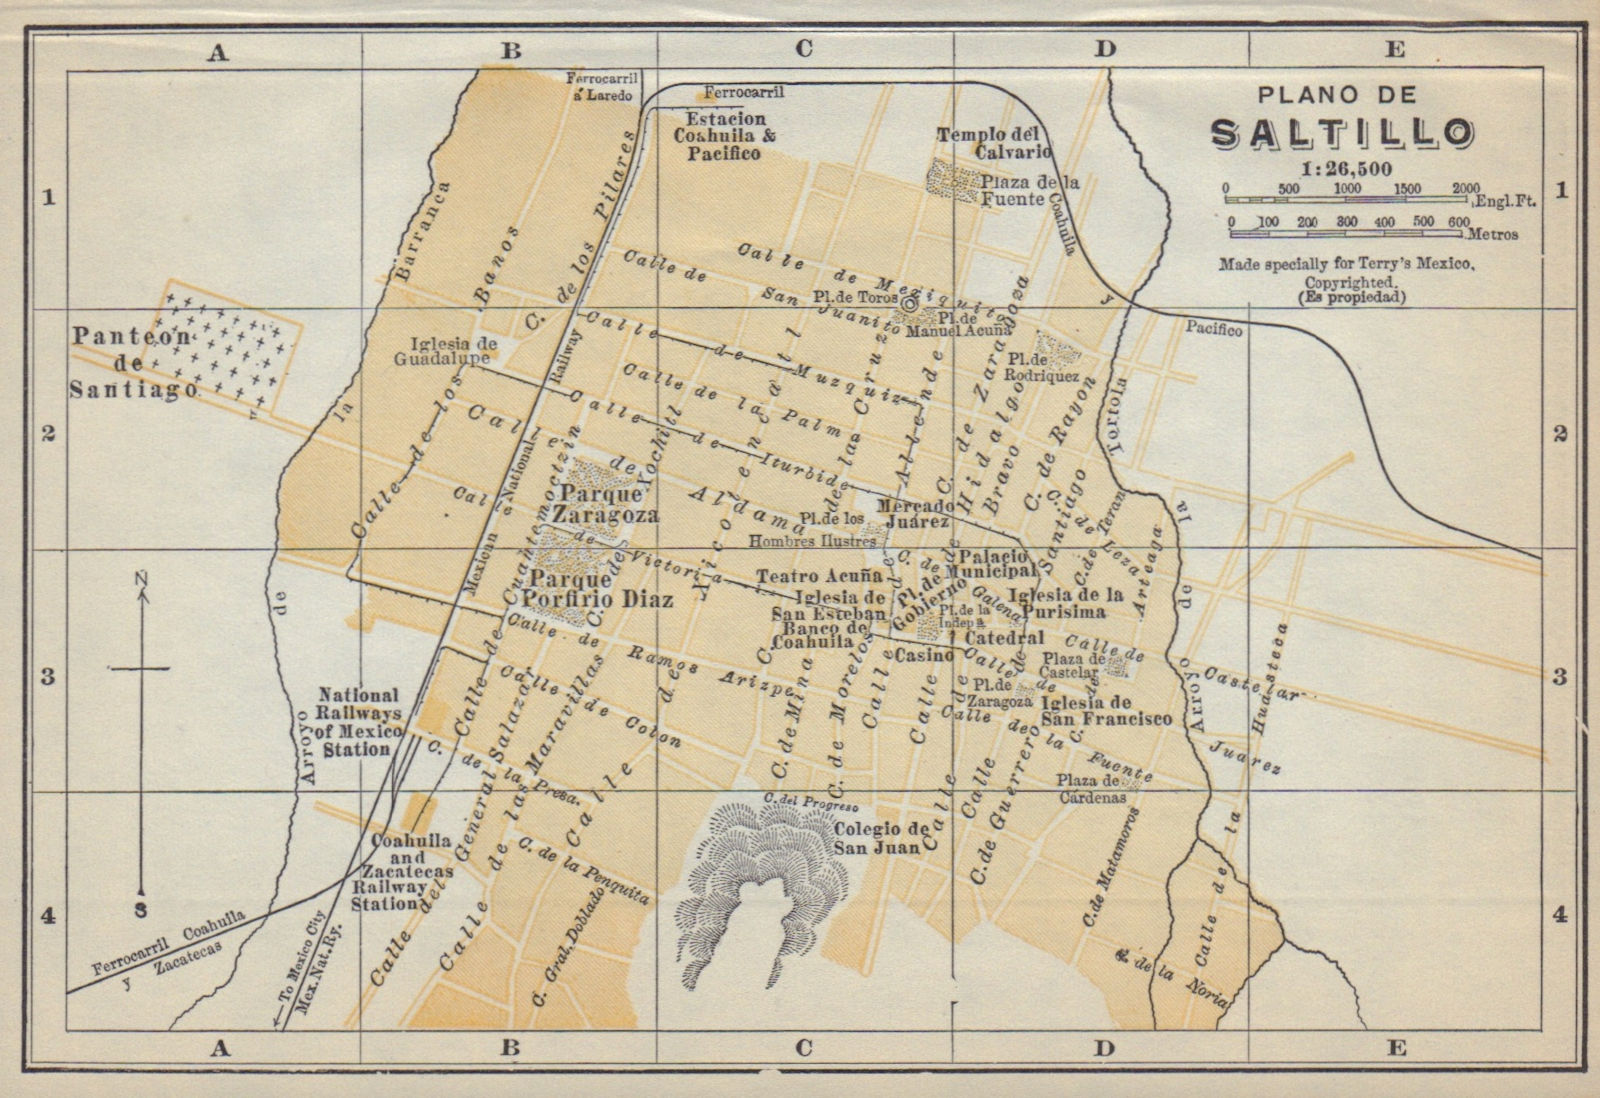 Plano de SALTILLO, Mexico. Mapa de la ciudad. City/town plan 1938 old